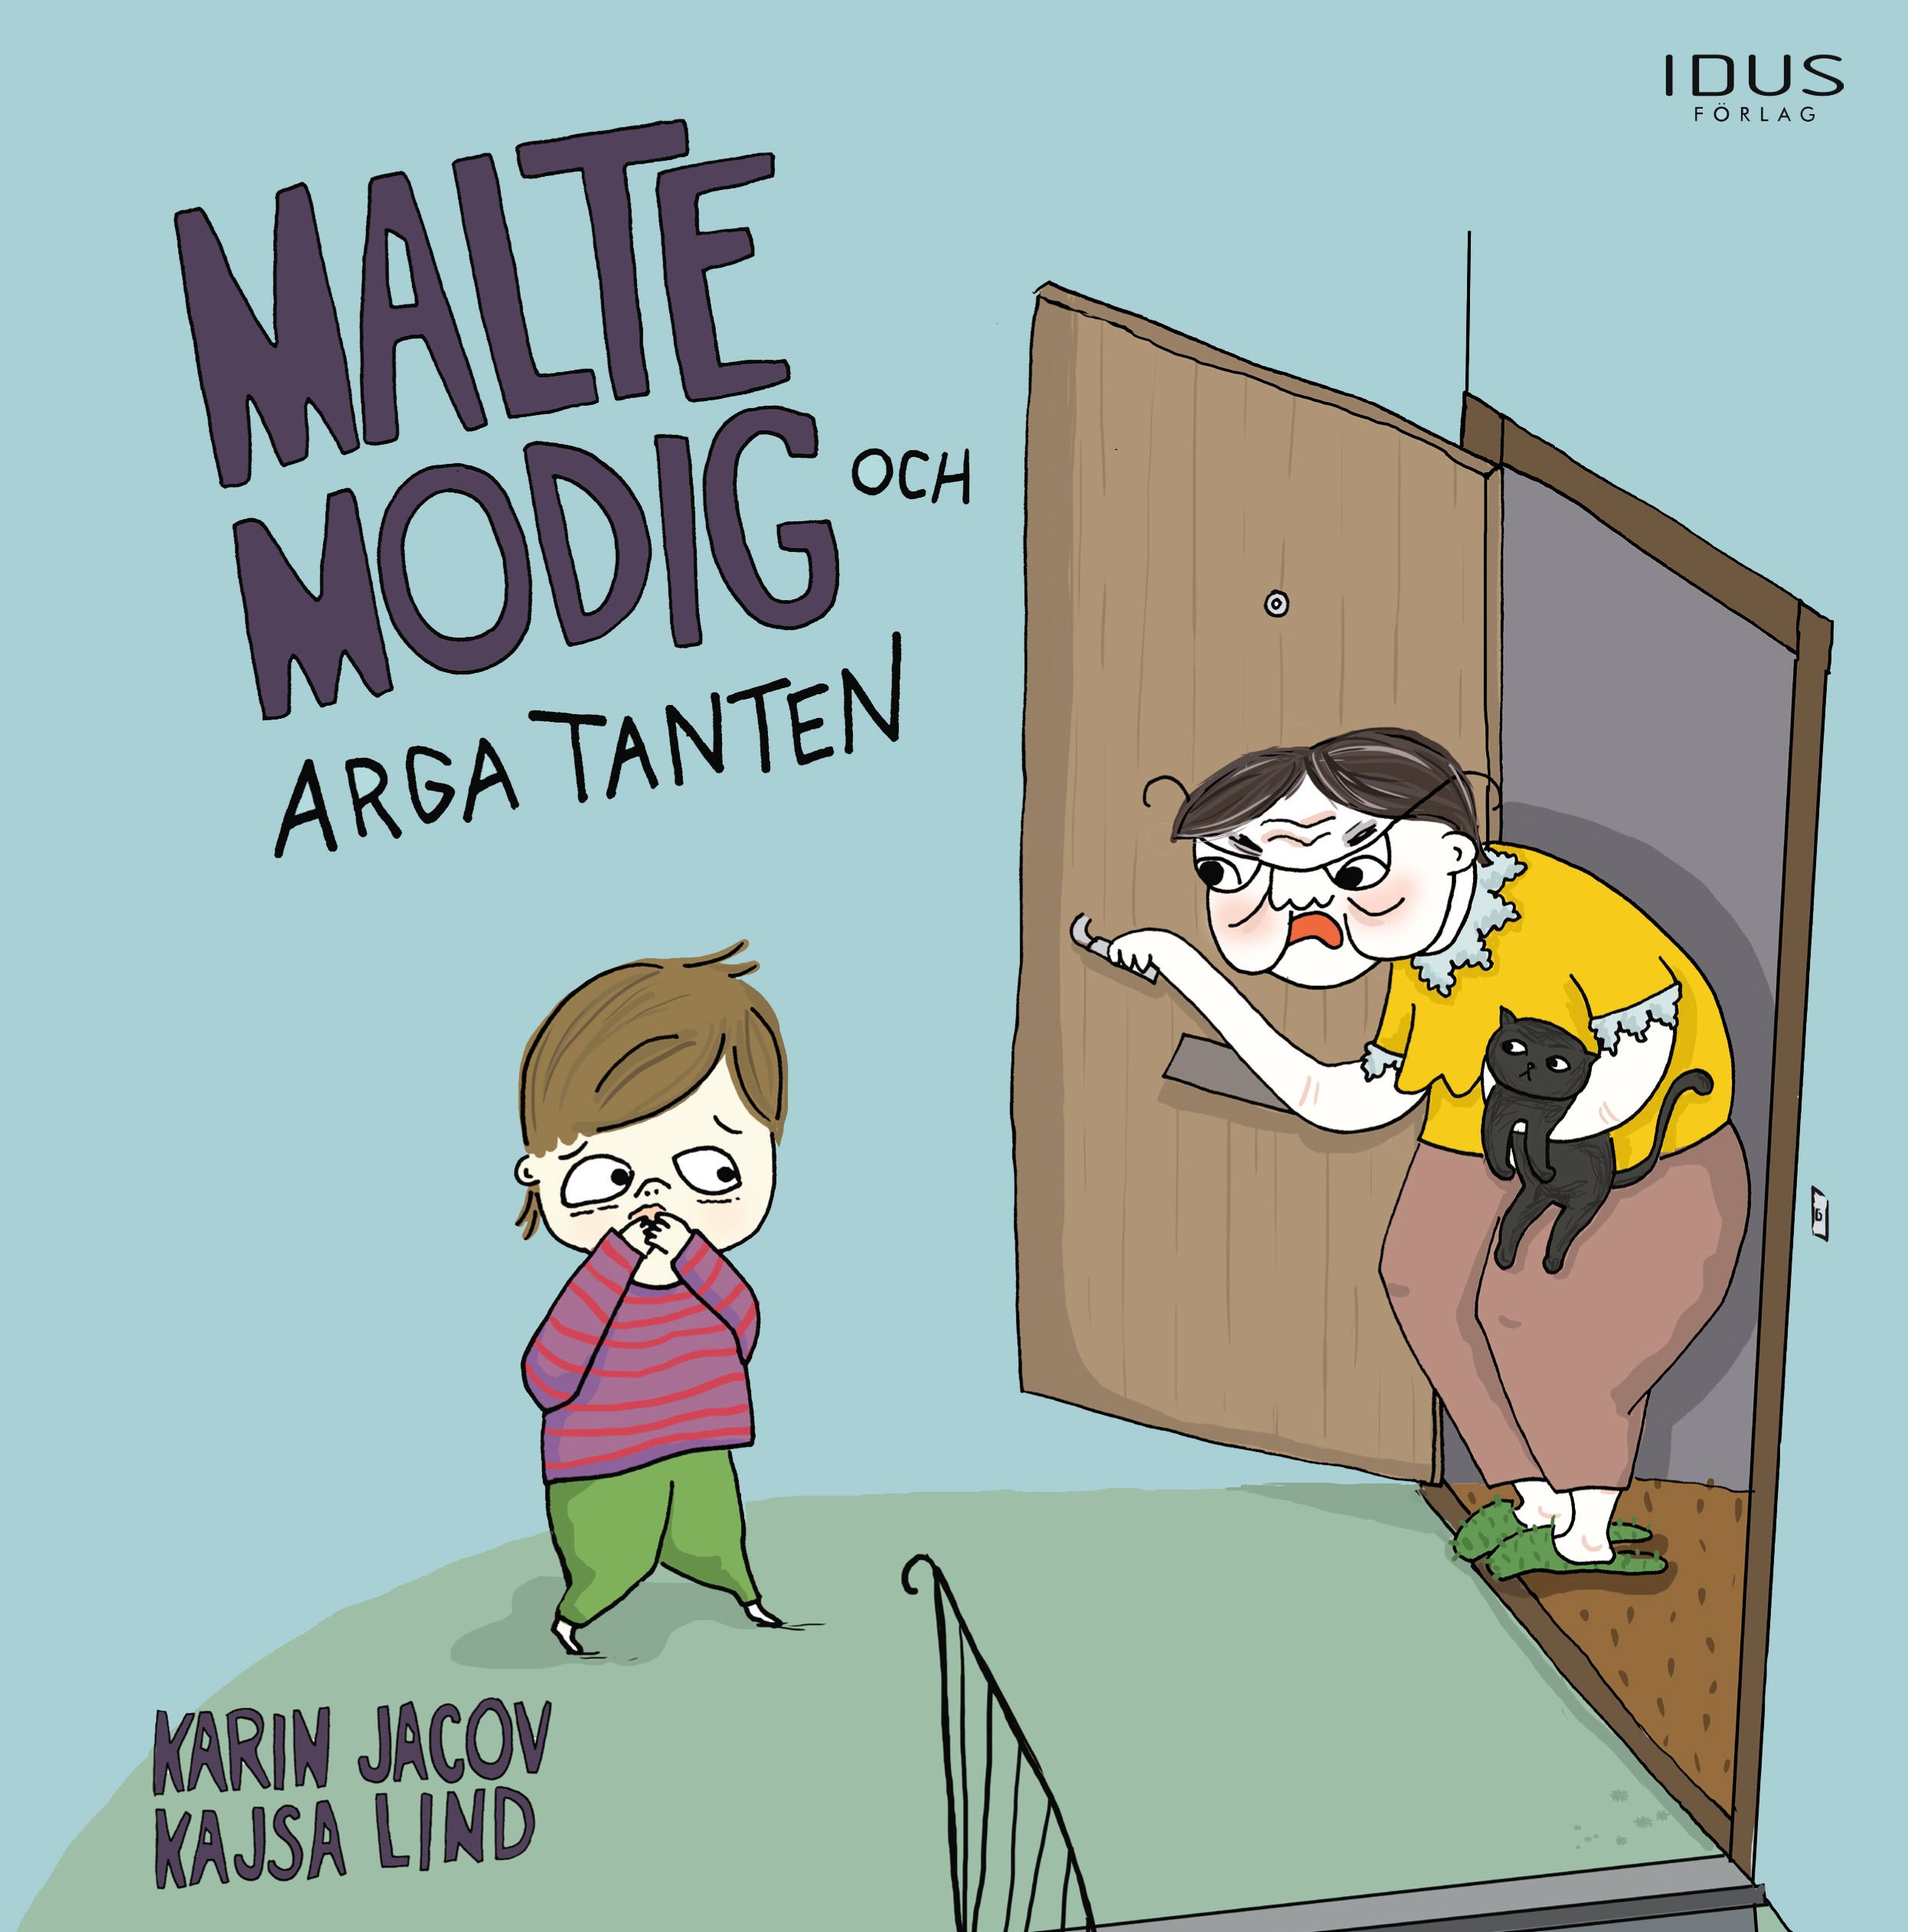 Malte Modig och arga tanten, eBook by Karin Javoc